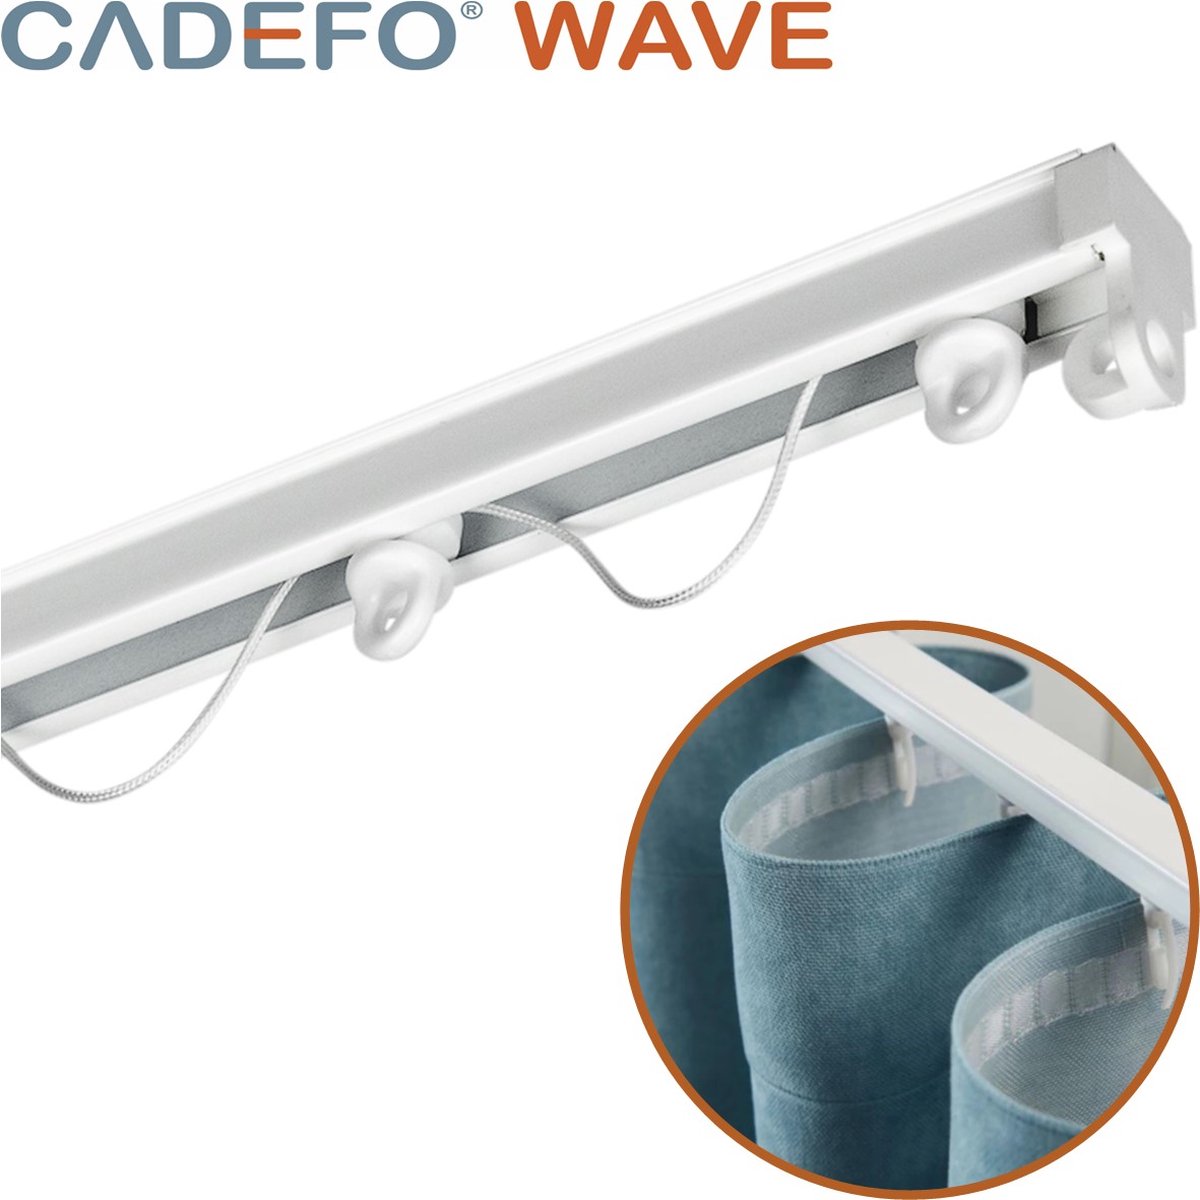 CADEFO WAVE (351 - 400 cm) Gordijnrails - Compleet op maat! - UIT 1 STUK - Leverbaar tot 6 meter - Plafondbevestiging - Lengte 398 cm